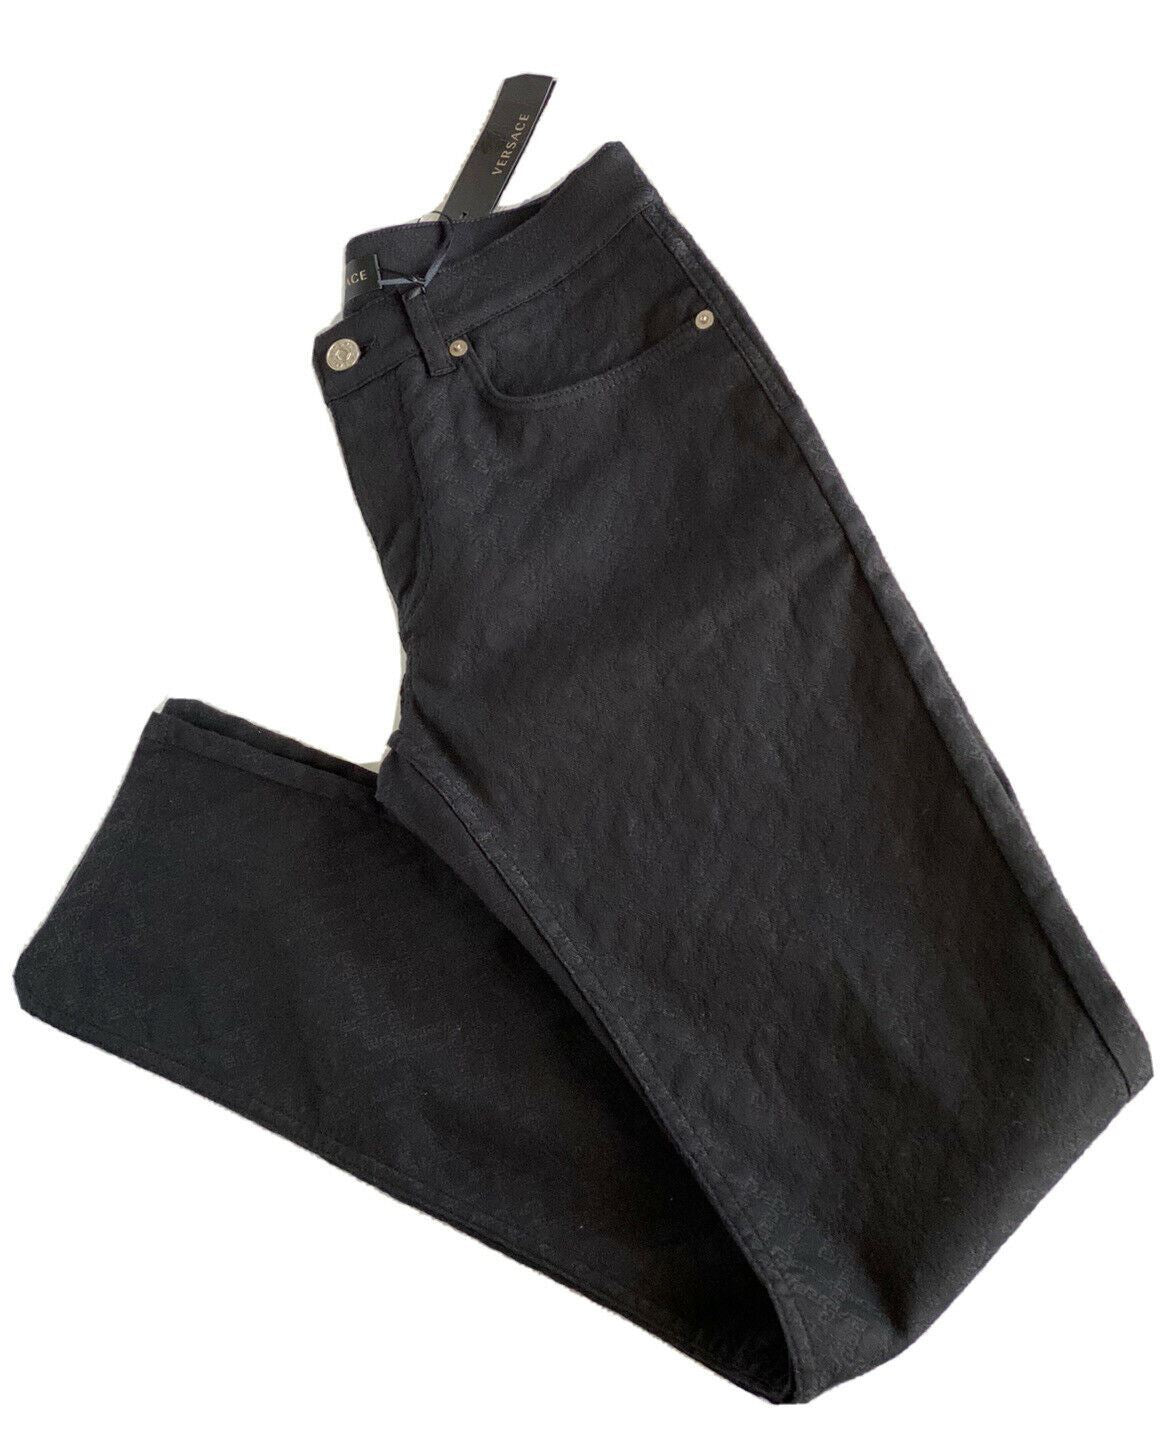 Neu mit Etikett: 695 $ Versace Herren-Denim-Jeans in Schwarz, Größe 30 US A81832, hergestellt in Italien